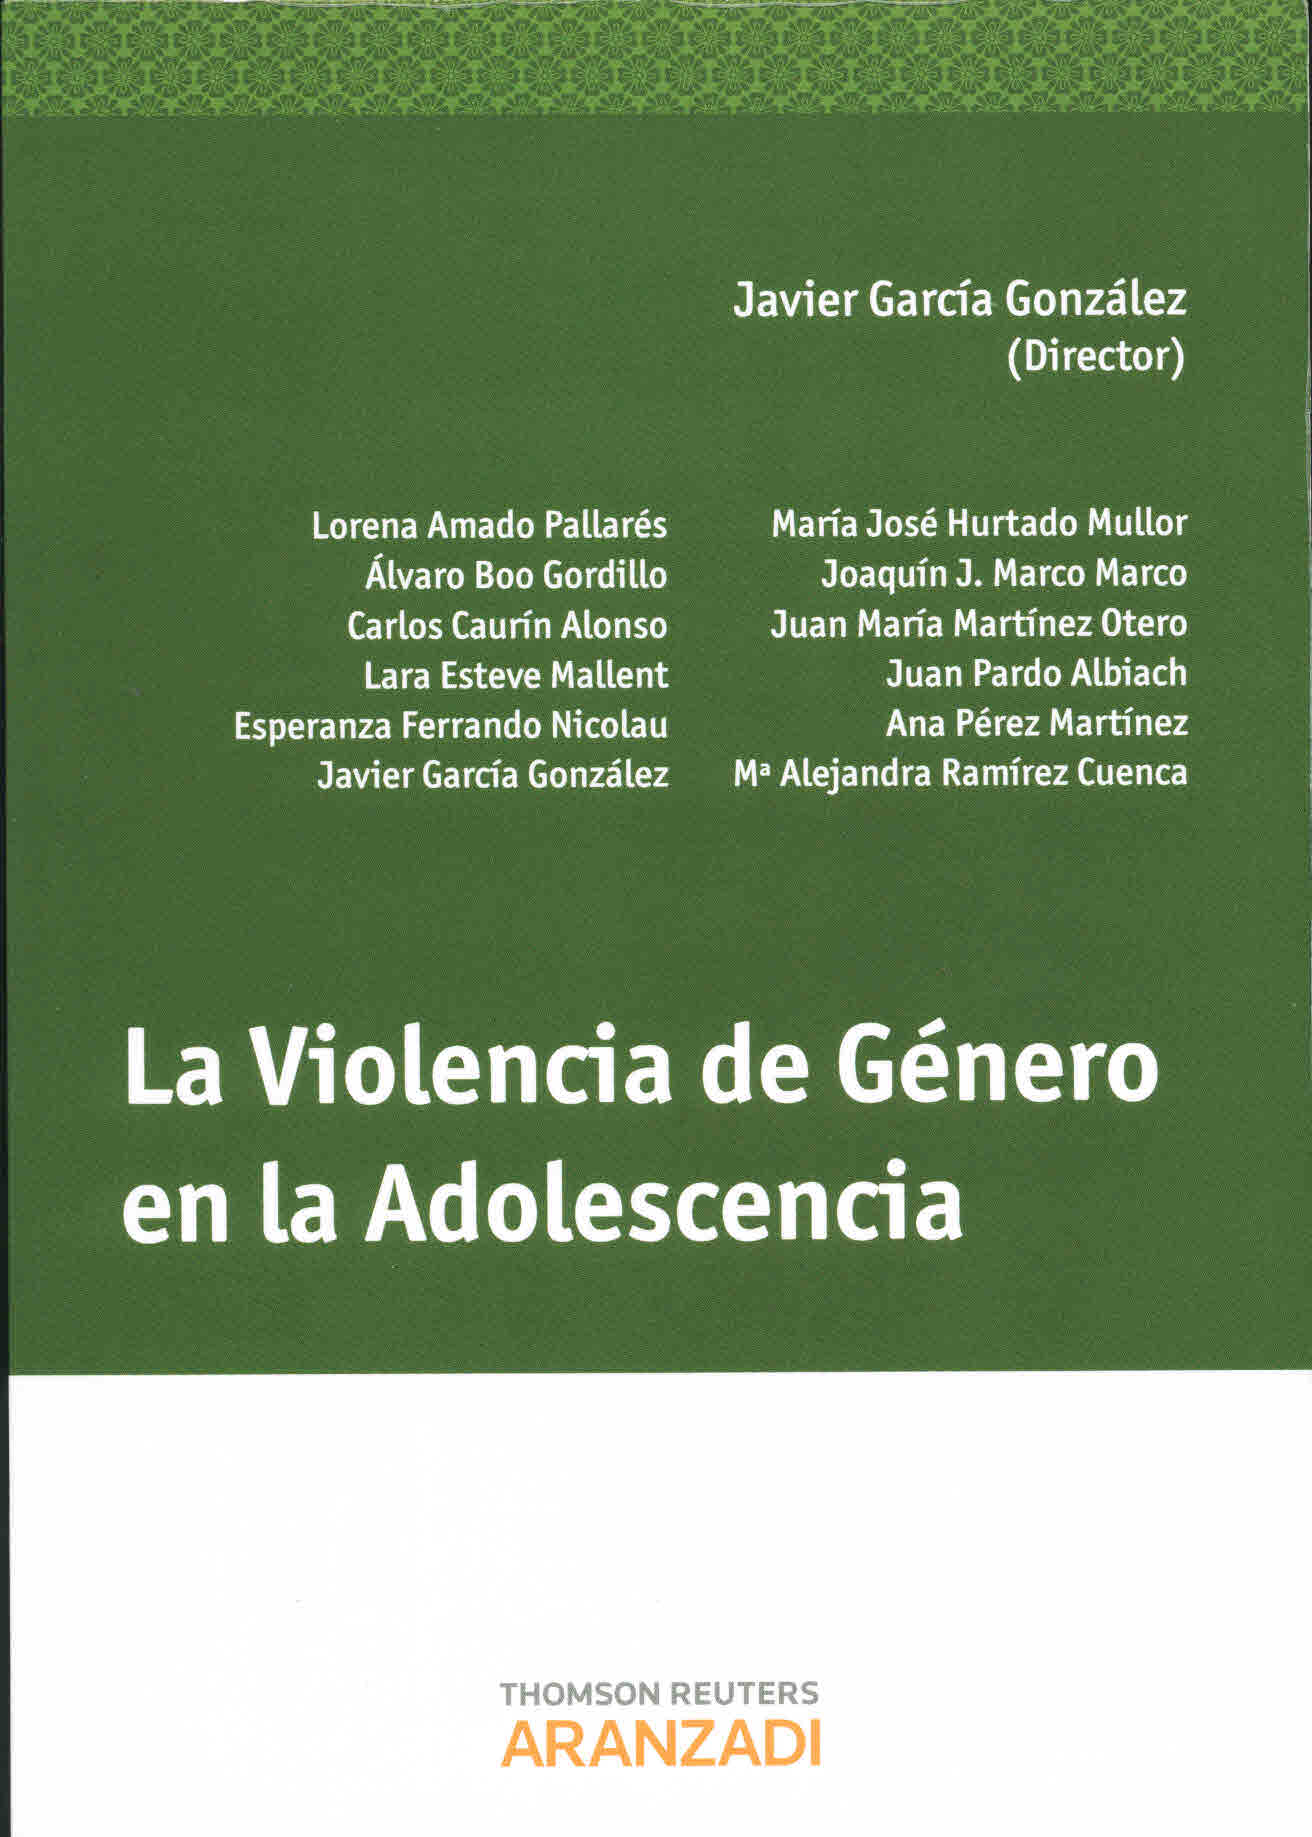 La violencia de género en la adolescencia